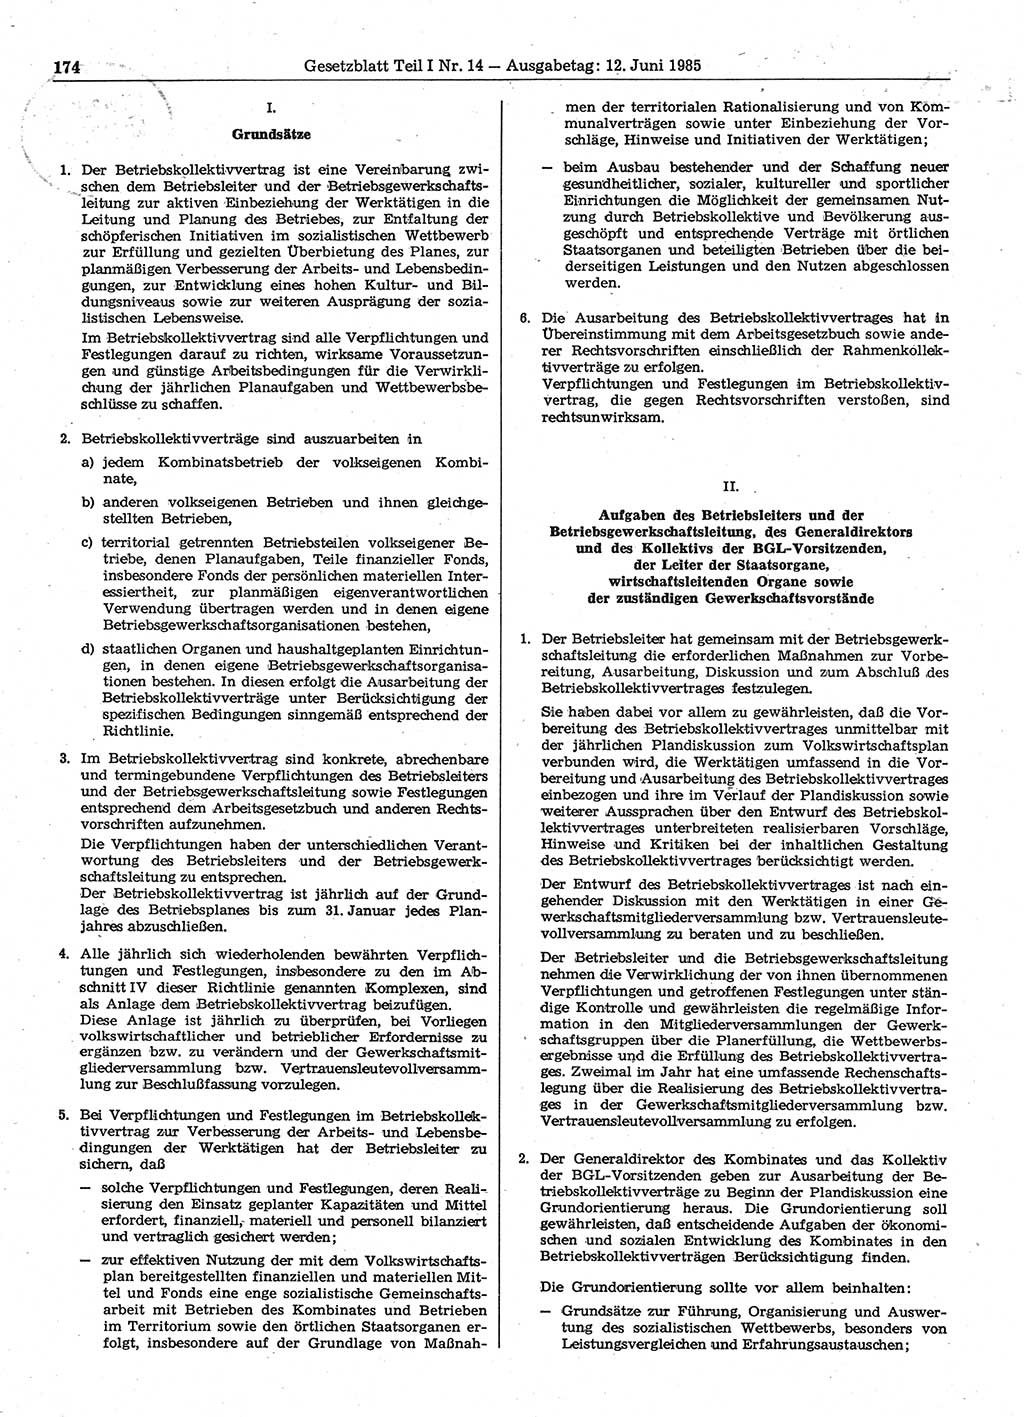 Gesetzblatt (GBl.) der Deutschen Demokratischen Republik (DDR) Teil Ⅰ 1985, Seite 174 (GBl. DDR Ⅰ 1985, S. 174)